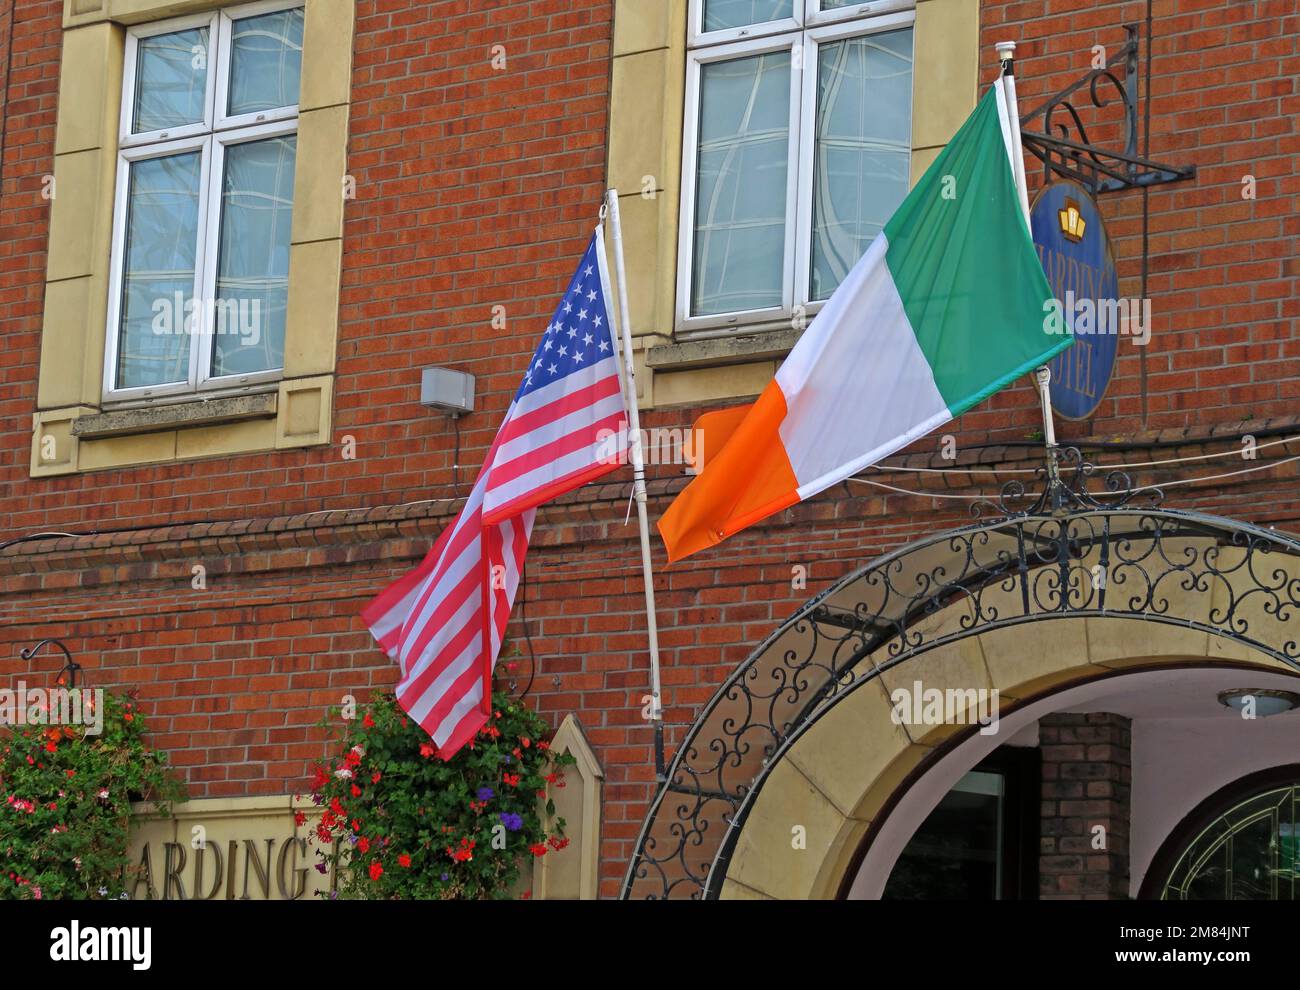 Liens américains avec l'Irlande, étoiles et bandes américaines, et drapeau tricolore irlandais à l'extérieur du Harding Hotel, Fishamble St, Temple Bar, Dublin Banque D'Images